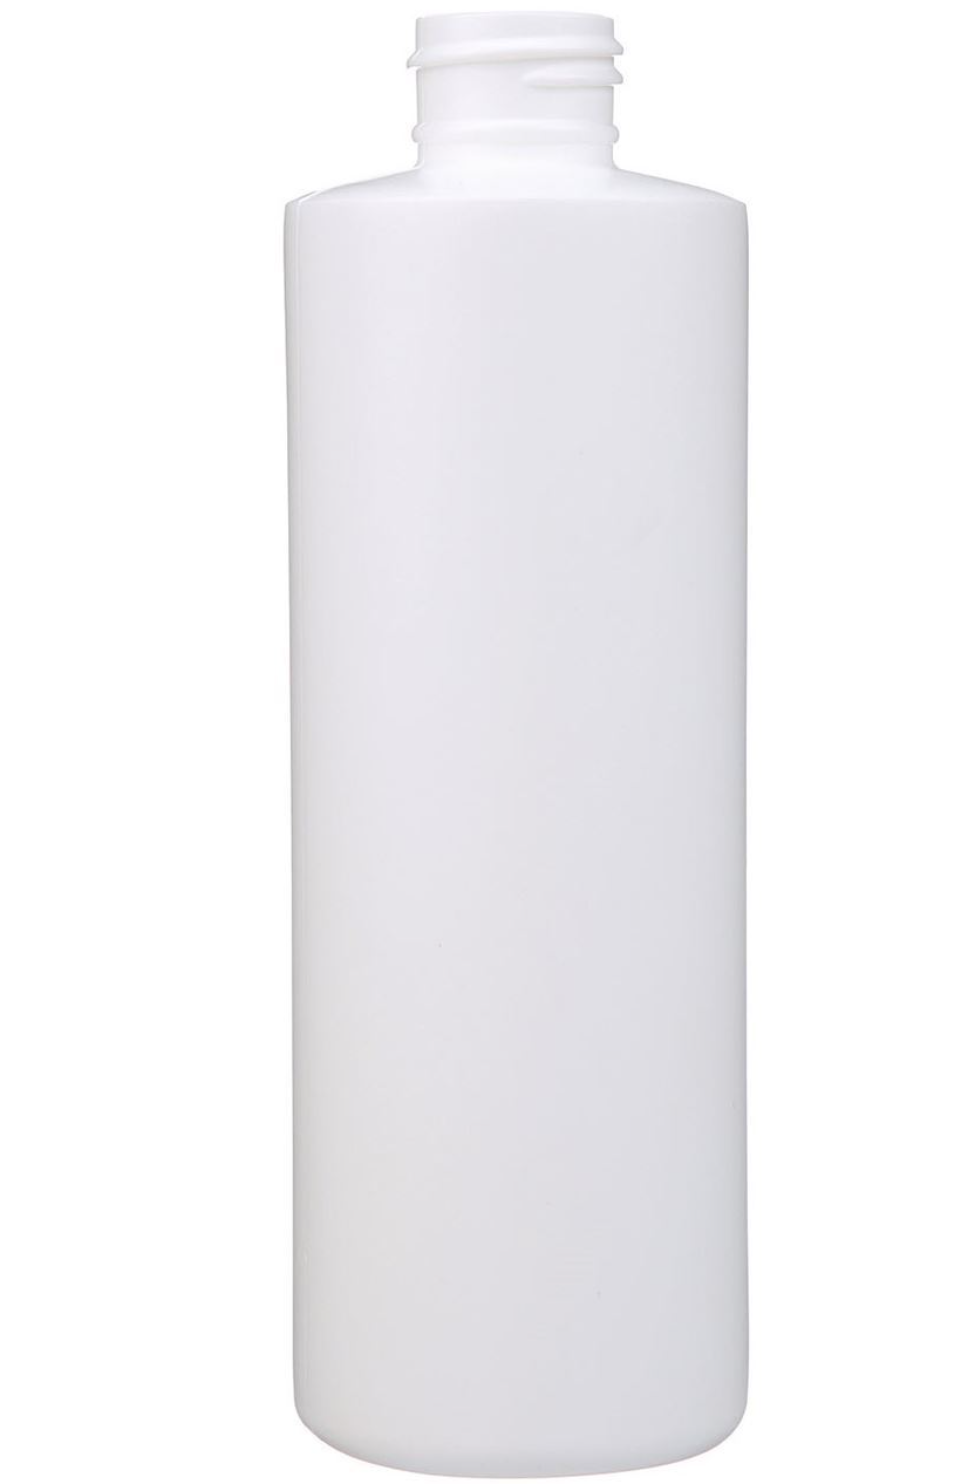 One Dozen 8 oz White HDPE Plastic Cylinder Round Bottle - 24-410 Neck Finish - INCLUDES LIDS